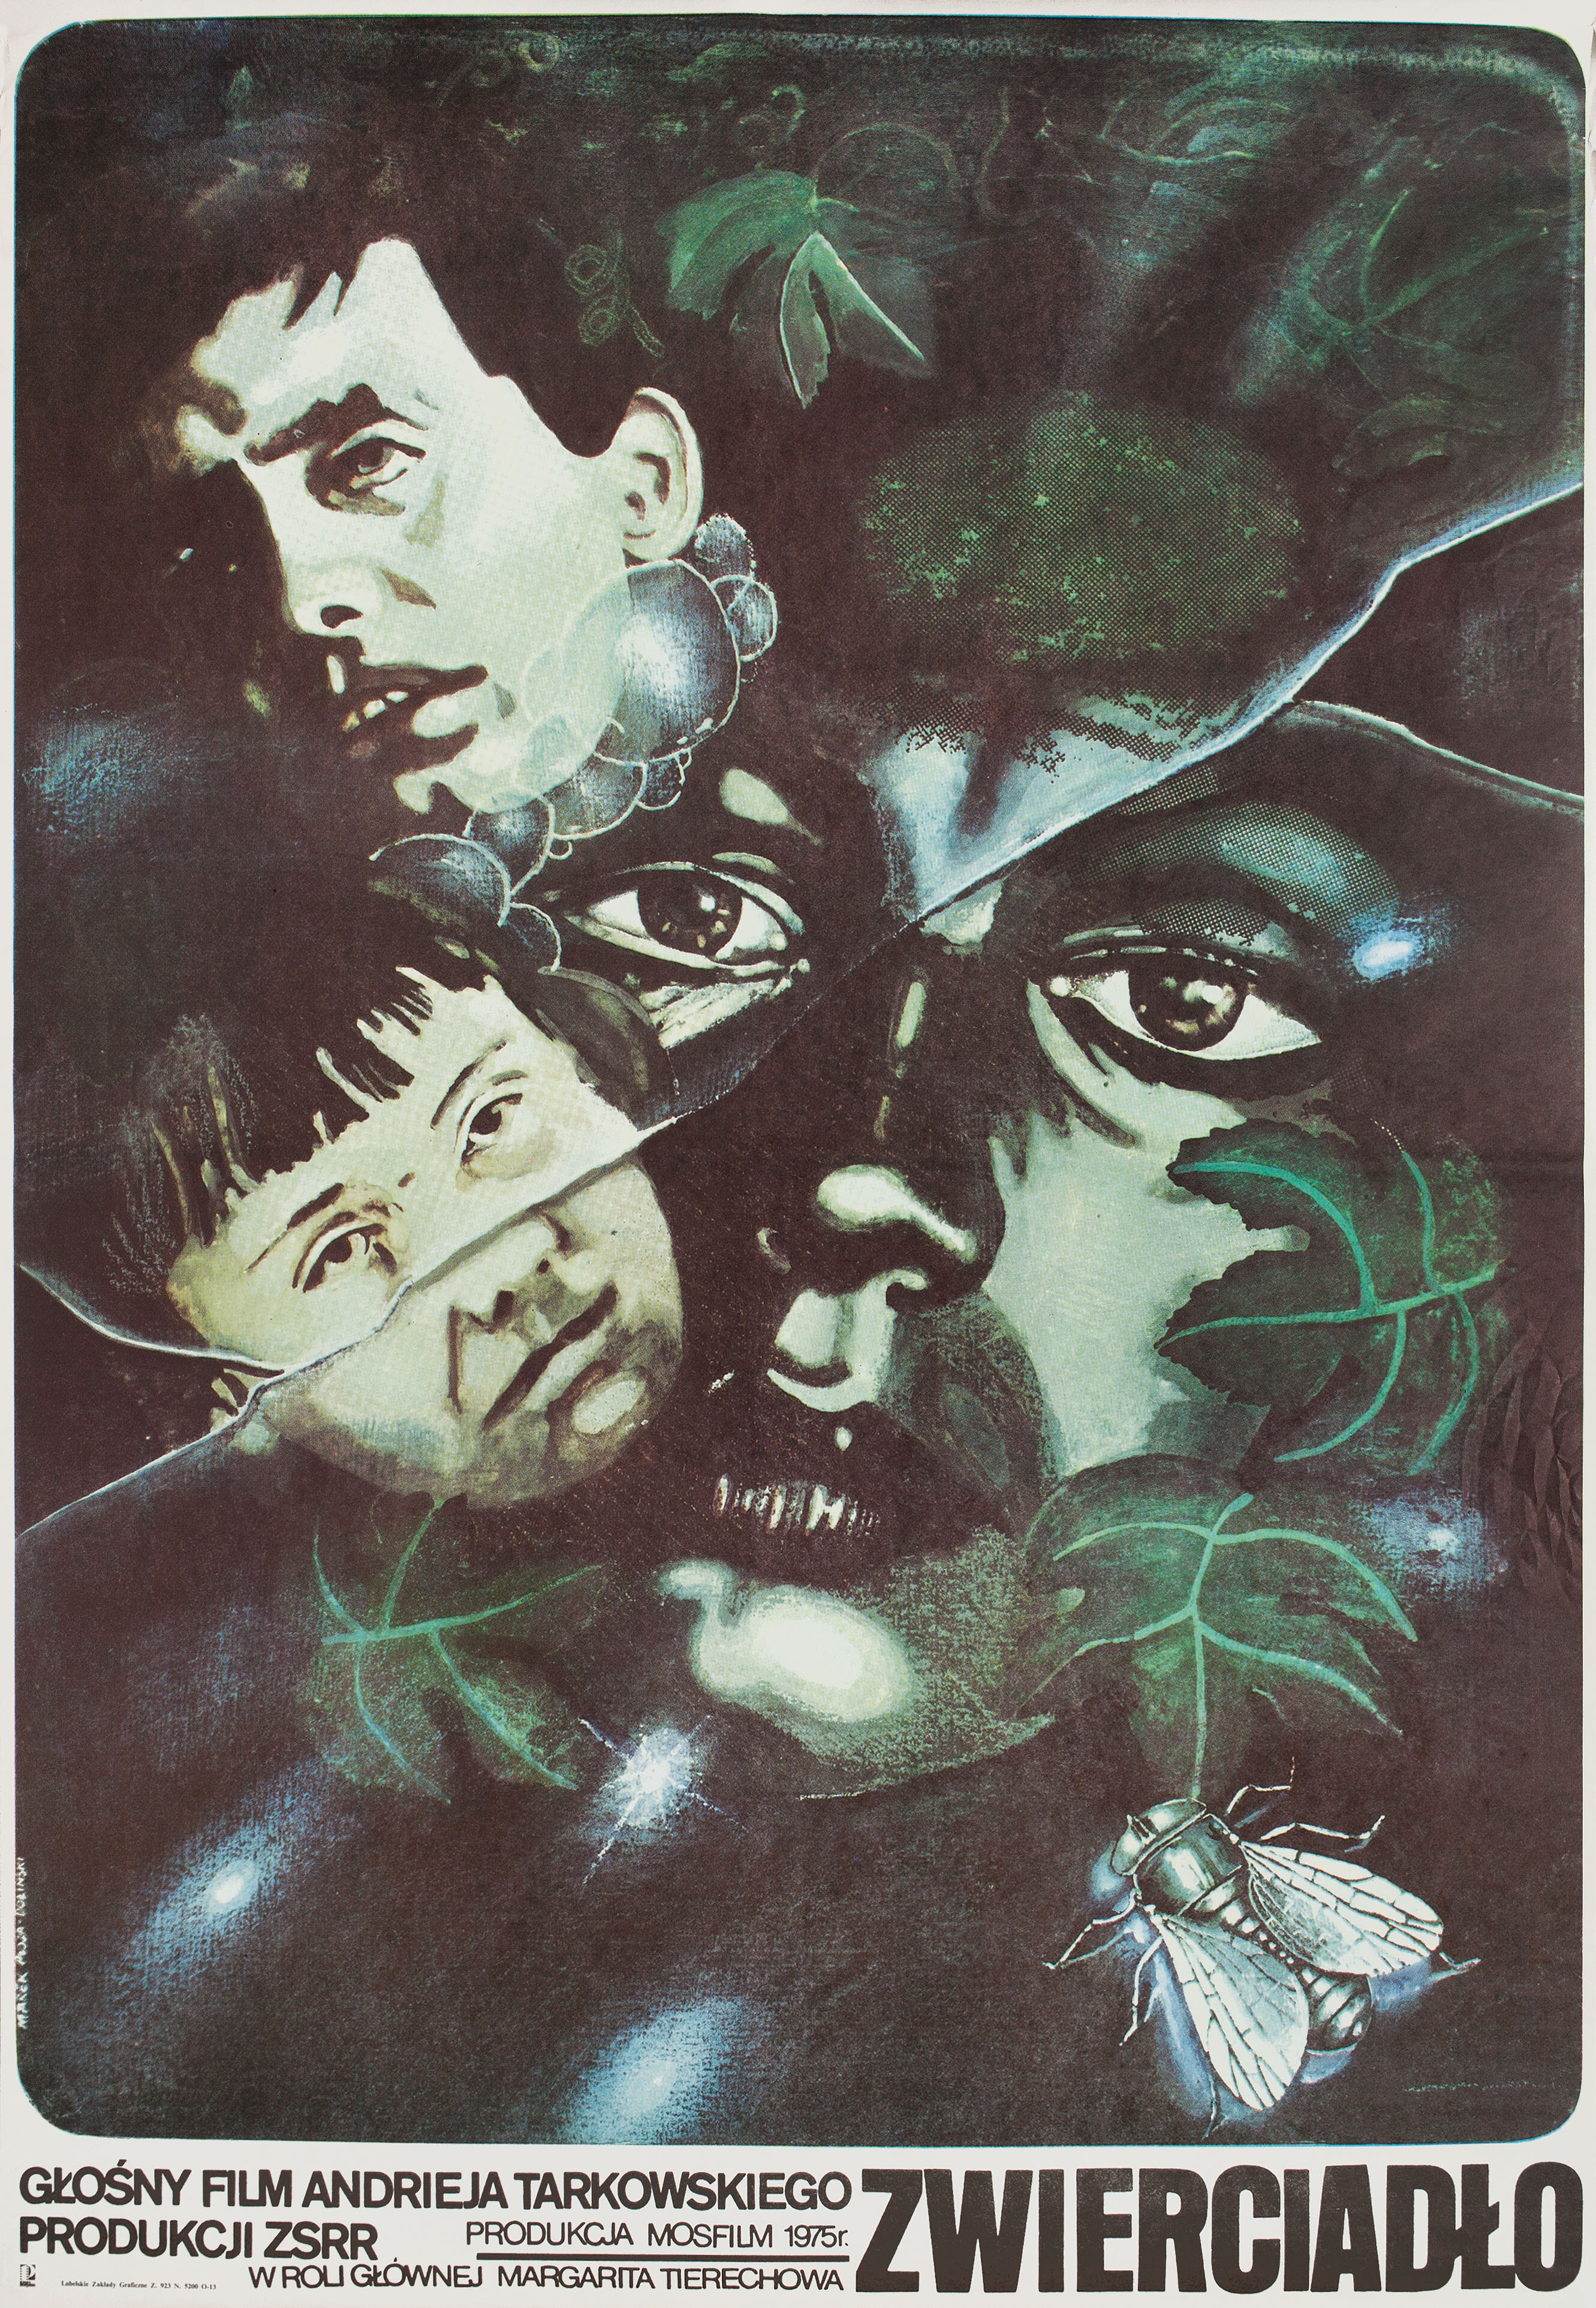 Зеркало (режиссёр Андрей Тарковский, 1975), польский постер к фильму, автор Марек Плоза-Долински, 1975 год